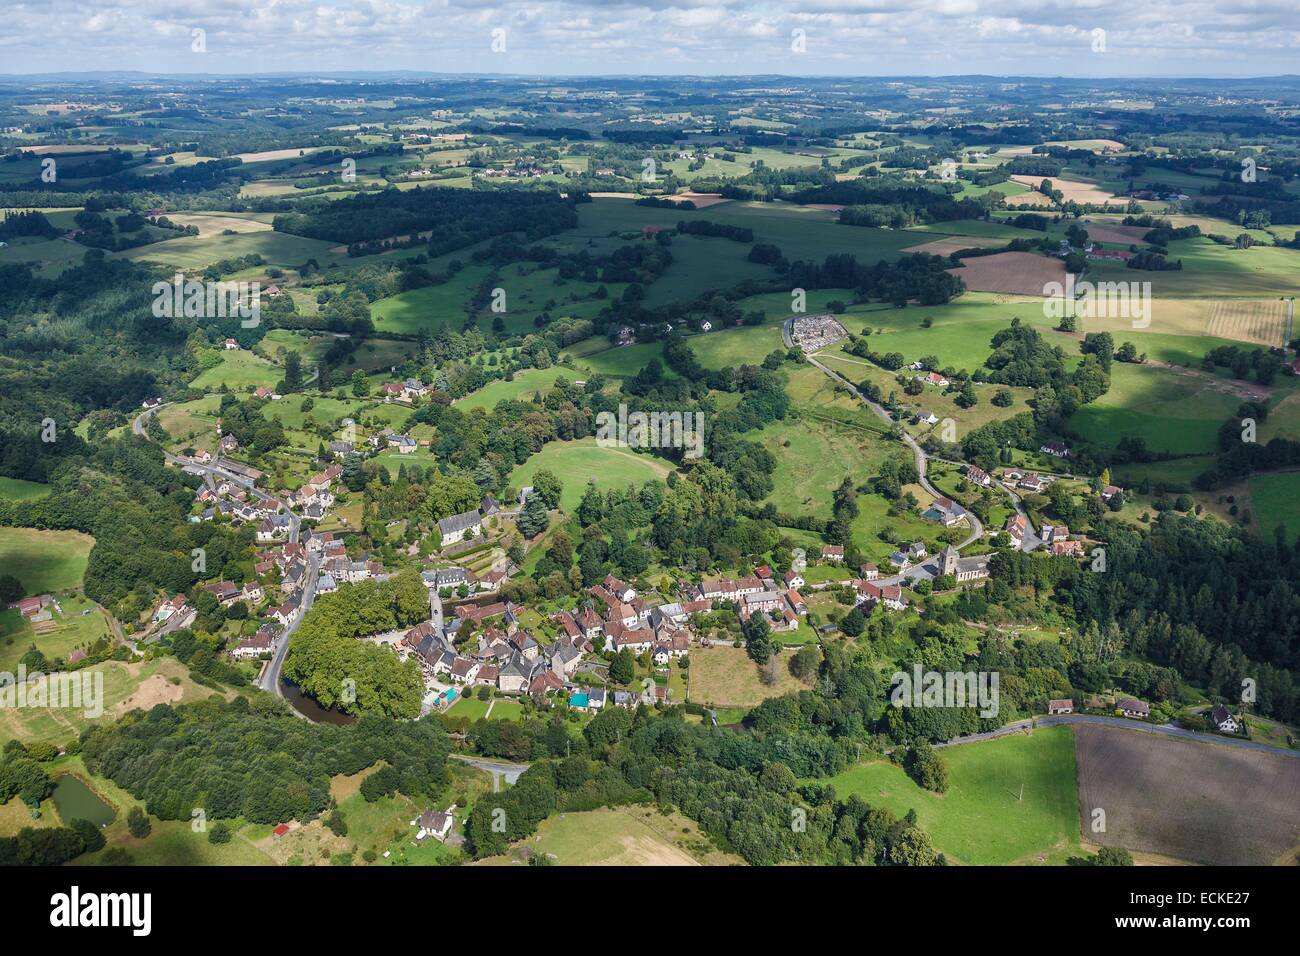 France, Correze, Segur le Chateau, labelled Les Plus Beaux Villages de France (The Most Beautiful Villages of France), the village (aerial view) Stock Photo